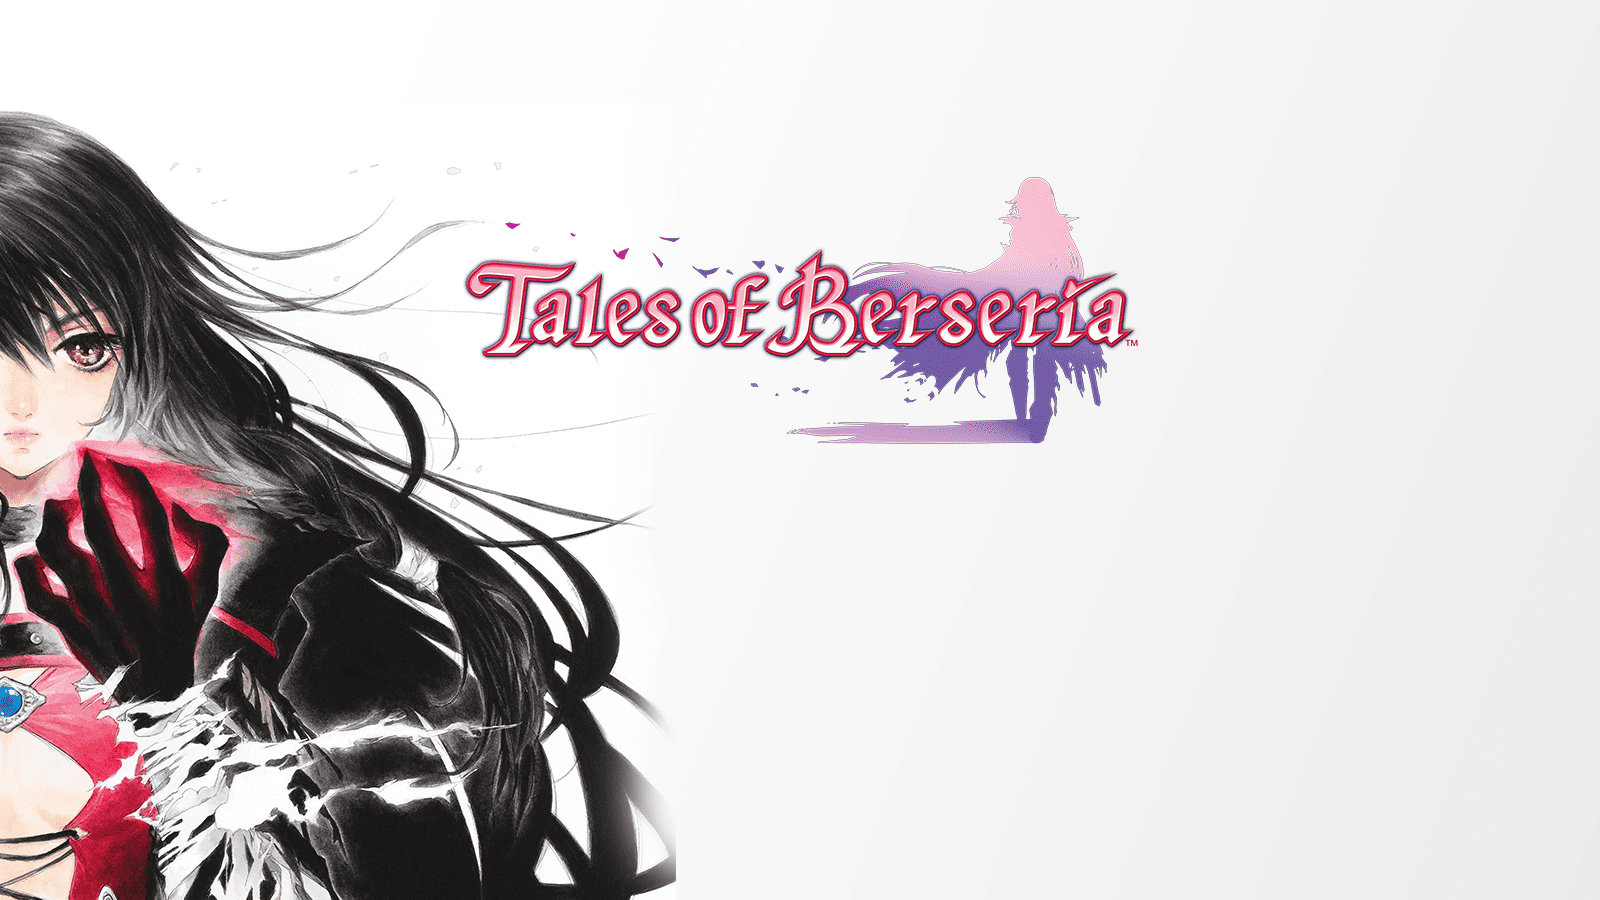 free download tales of berseria steam deck